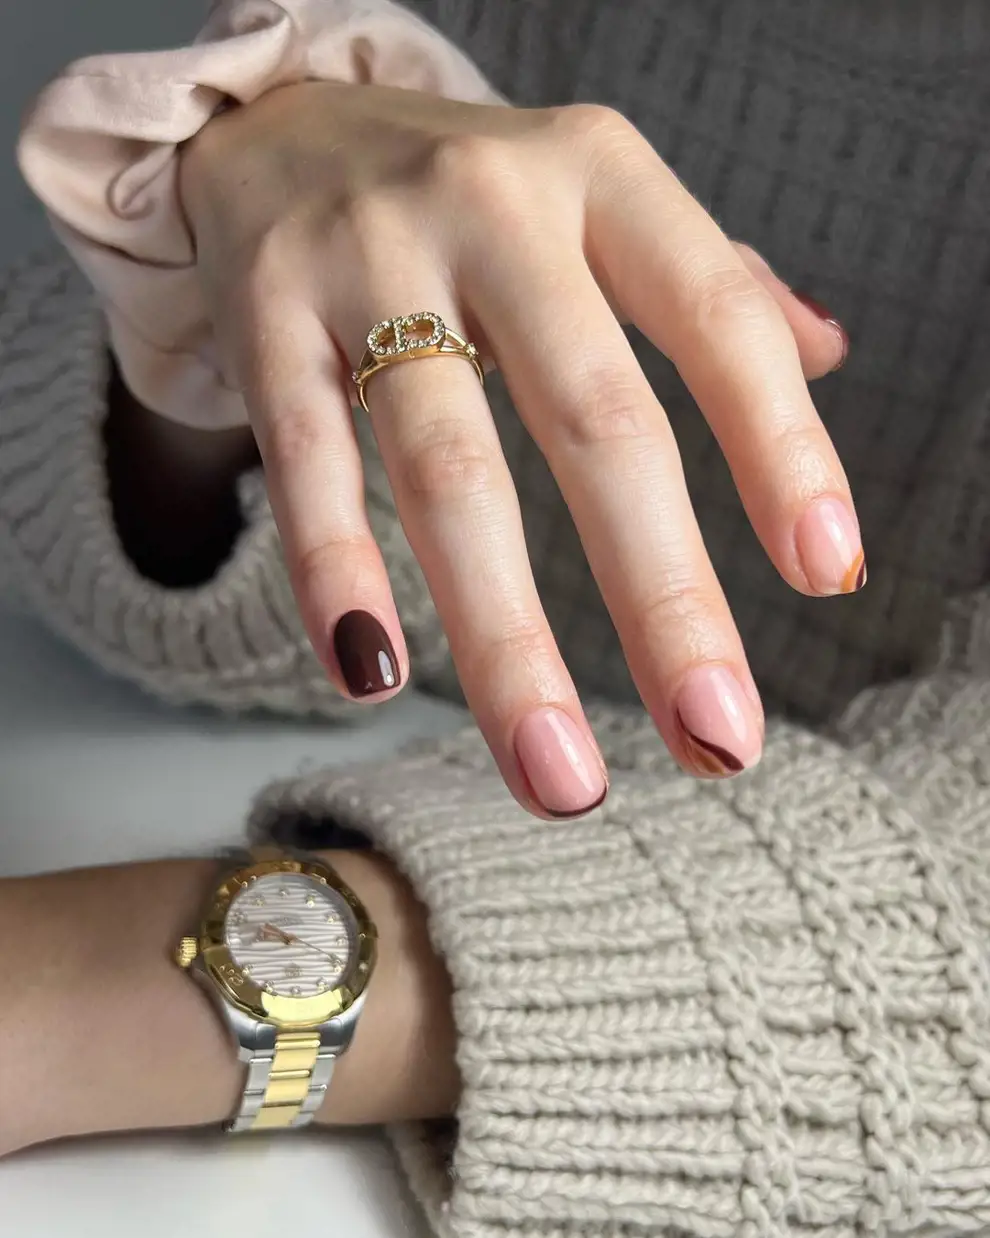 Uñas marrones: los diseños para inspirar la manicura más cálida y que siempre apetece